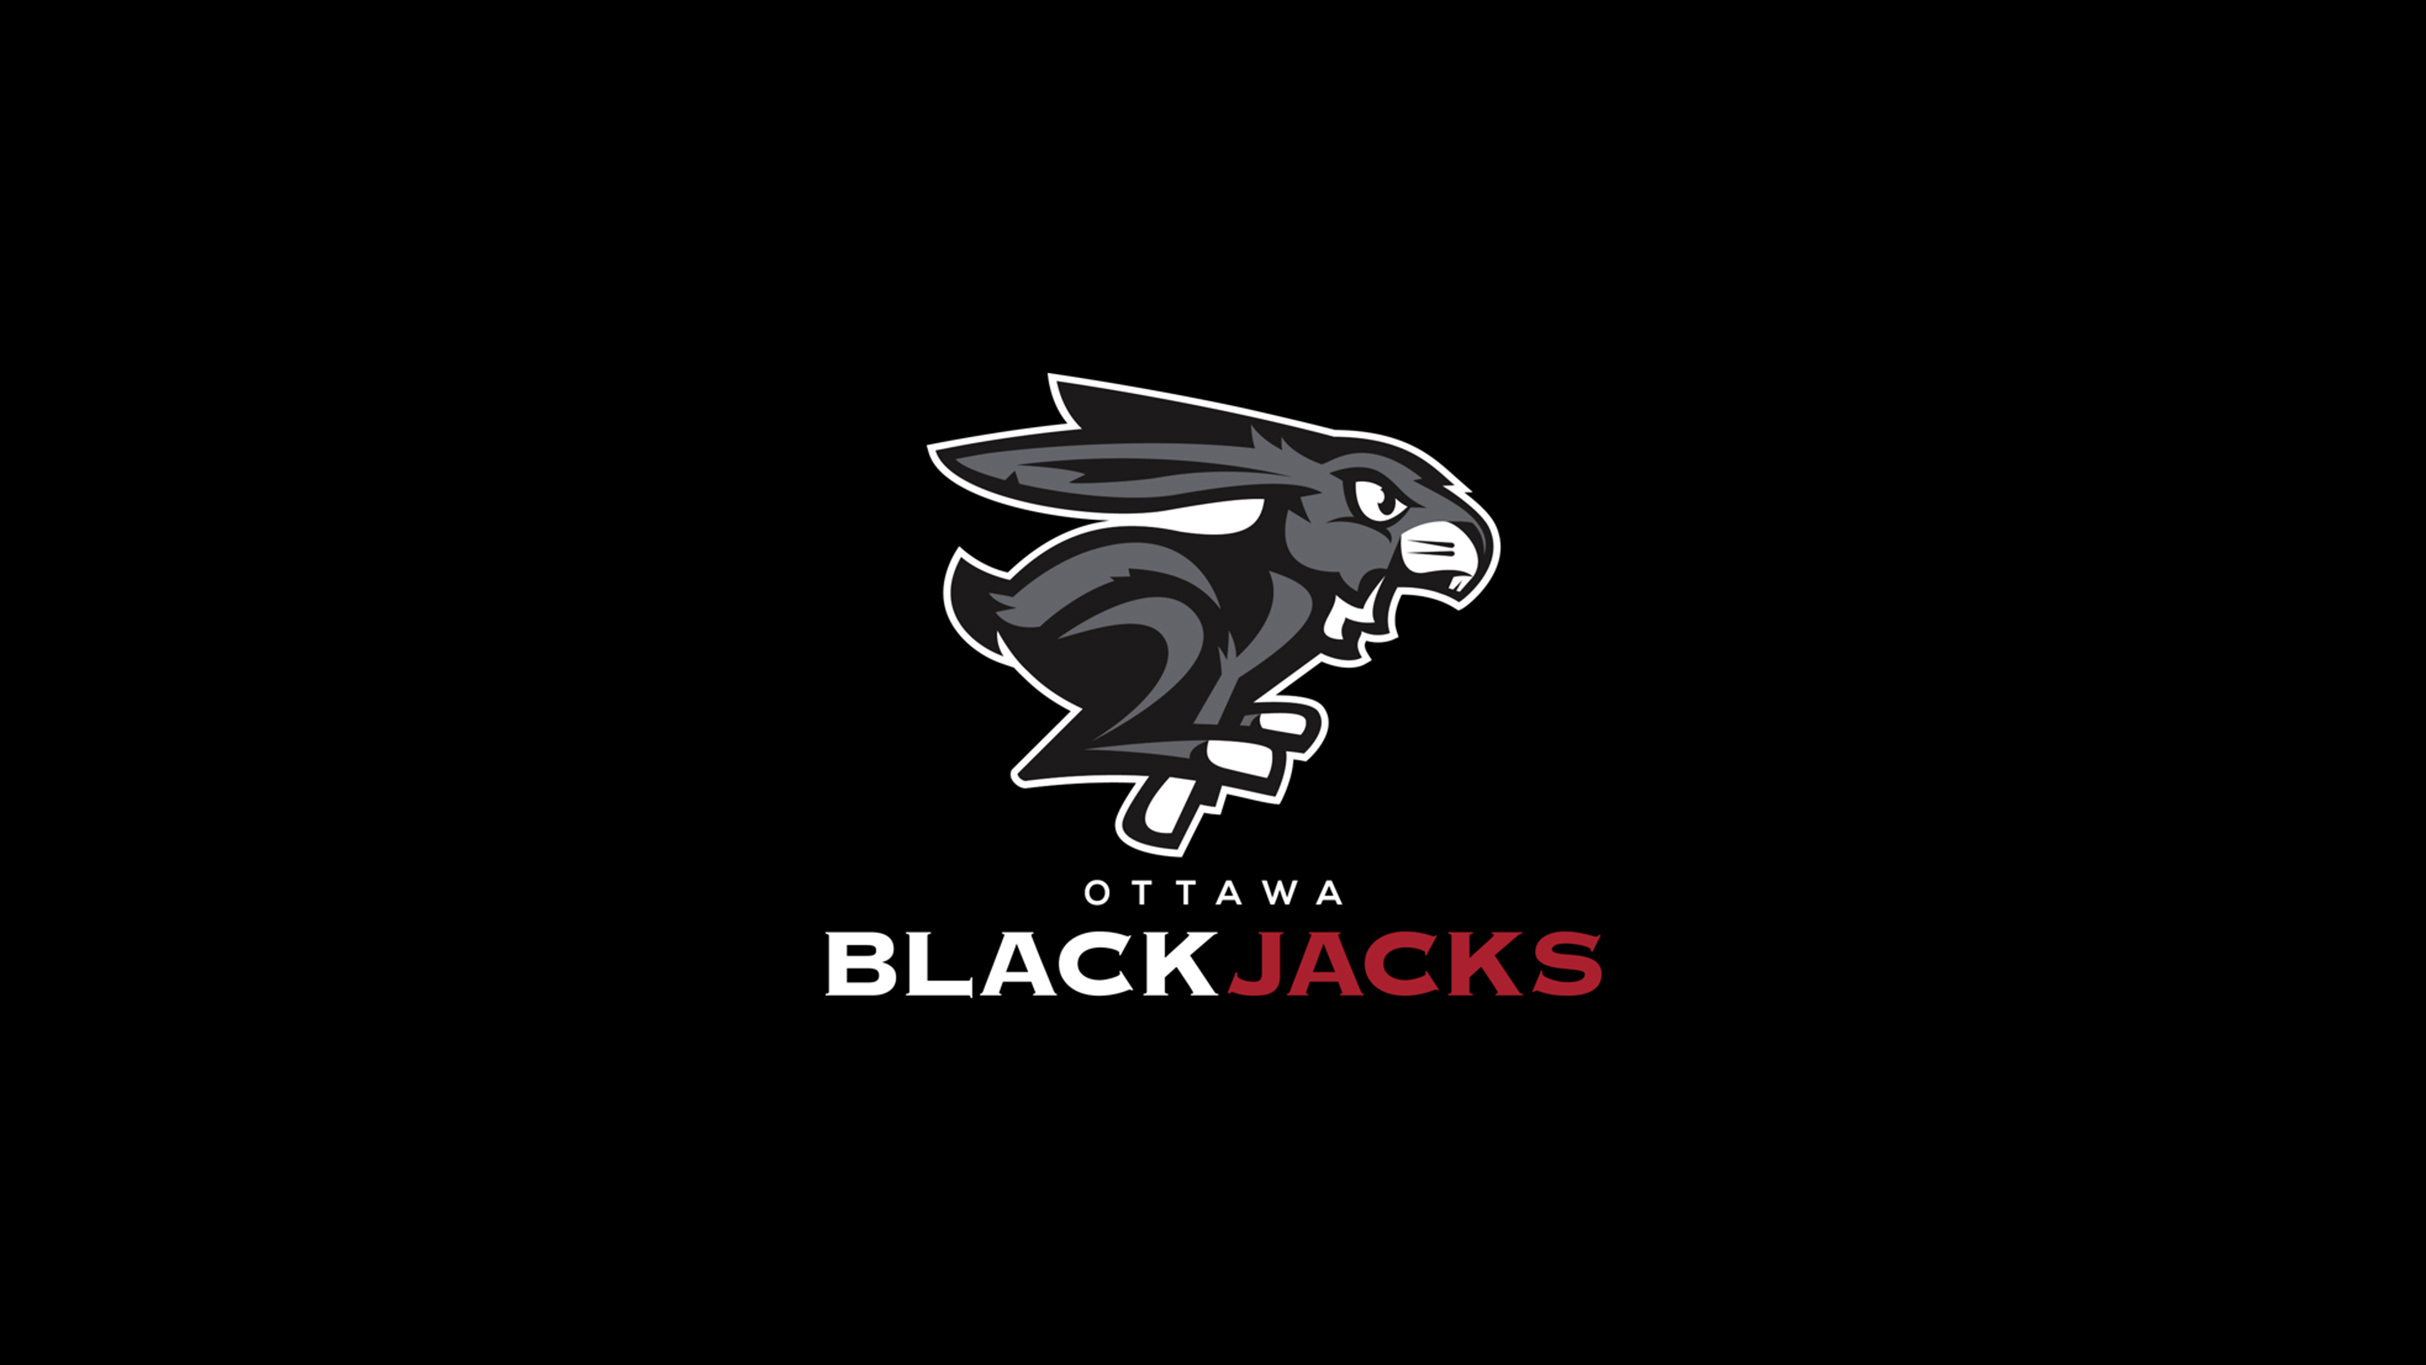 Ottawa BlackJacks vs. Niagara River Lions